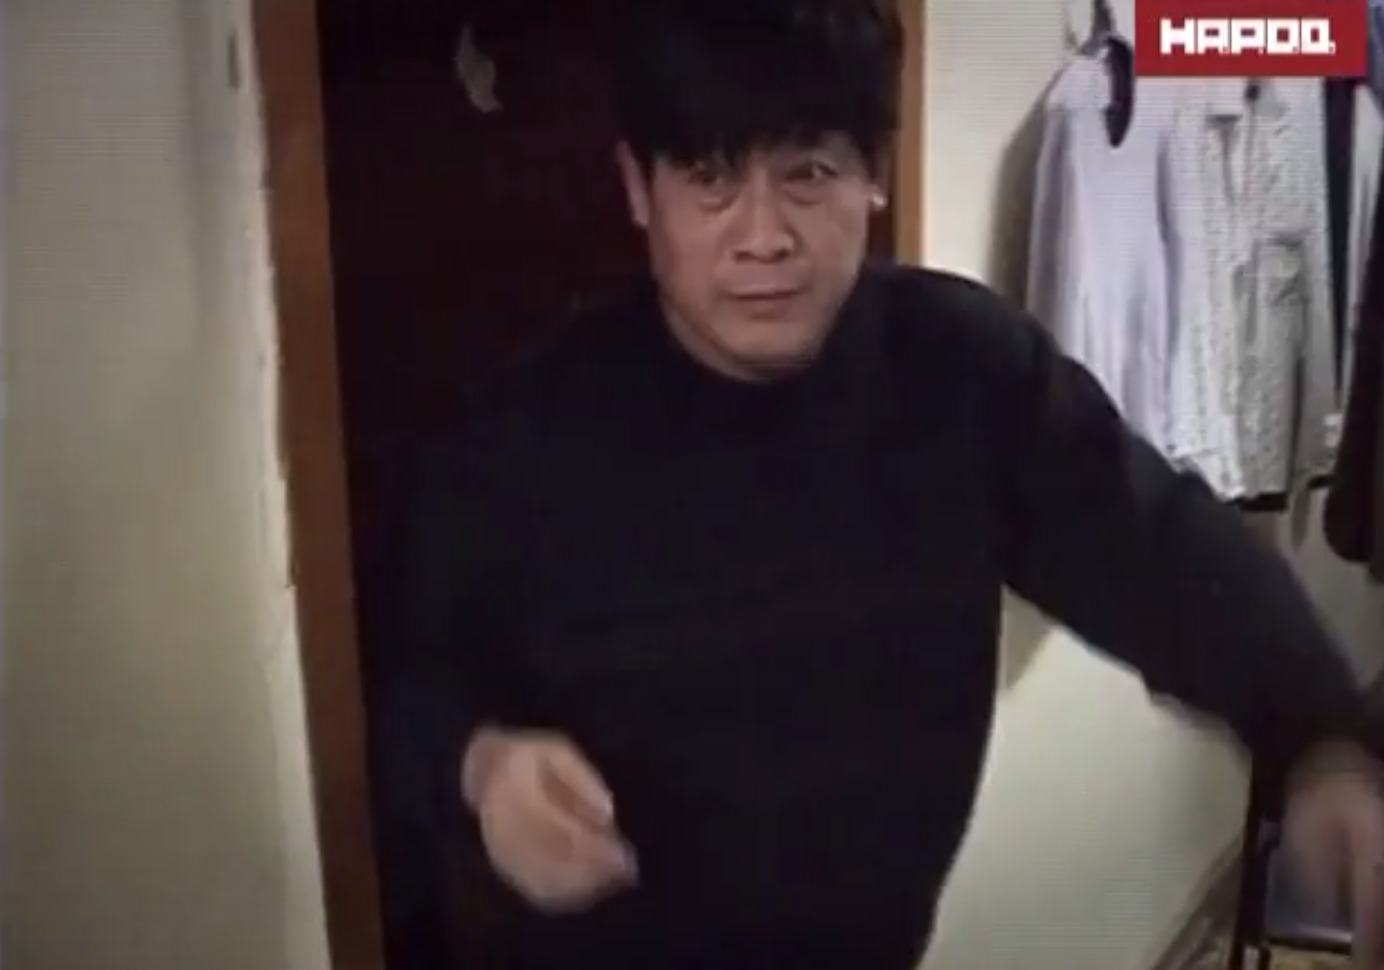 An Asian man leaving an apartment